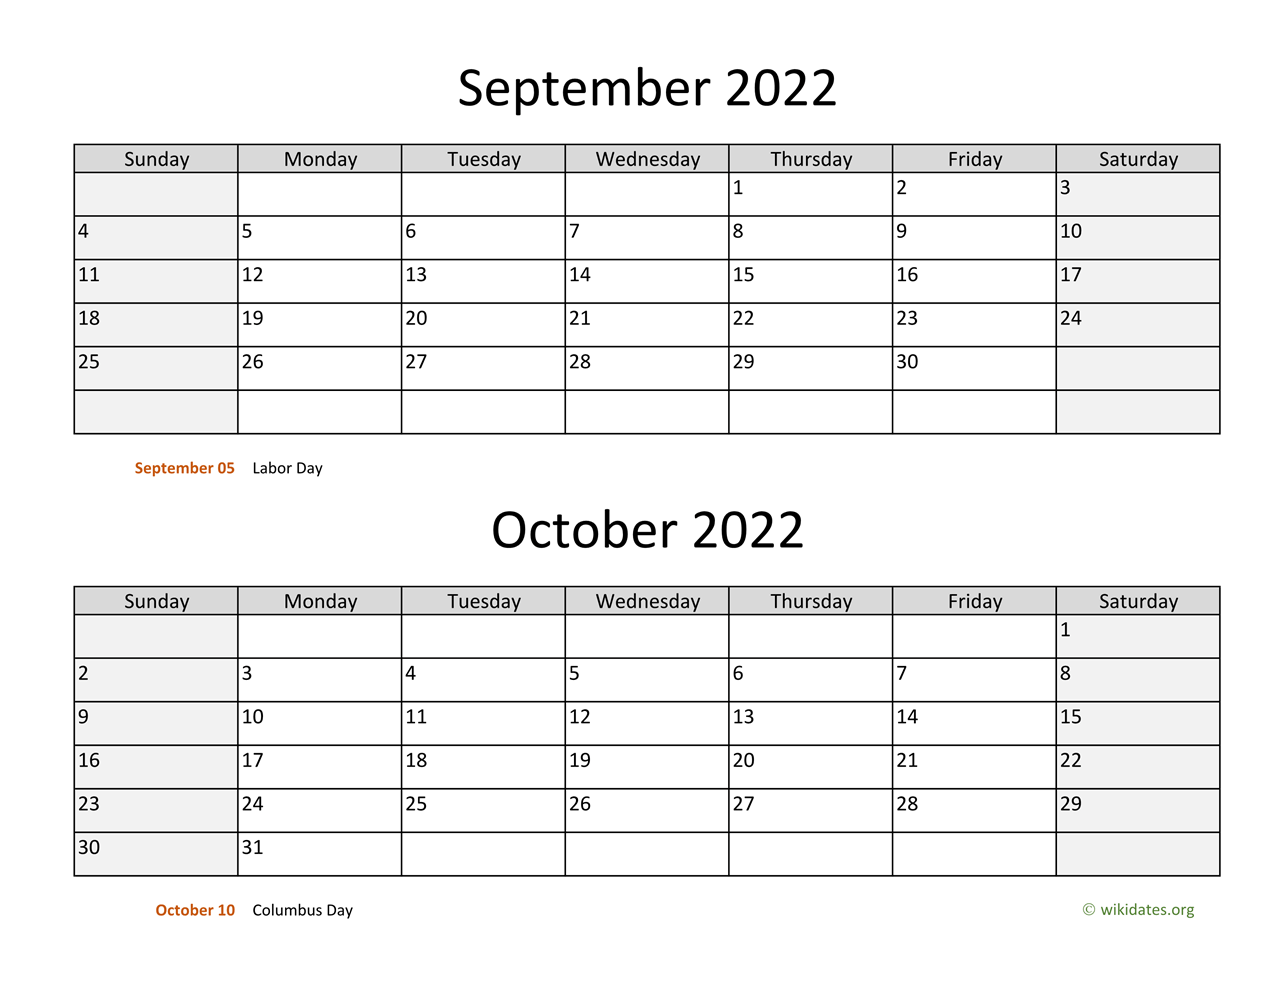 September And October Calendar 2022 September And October 2022 Calendar | Wikidates.org